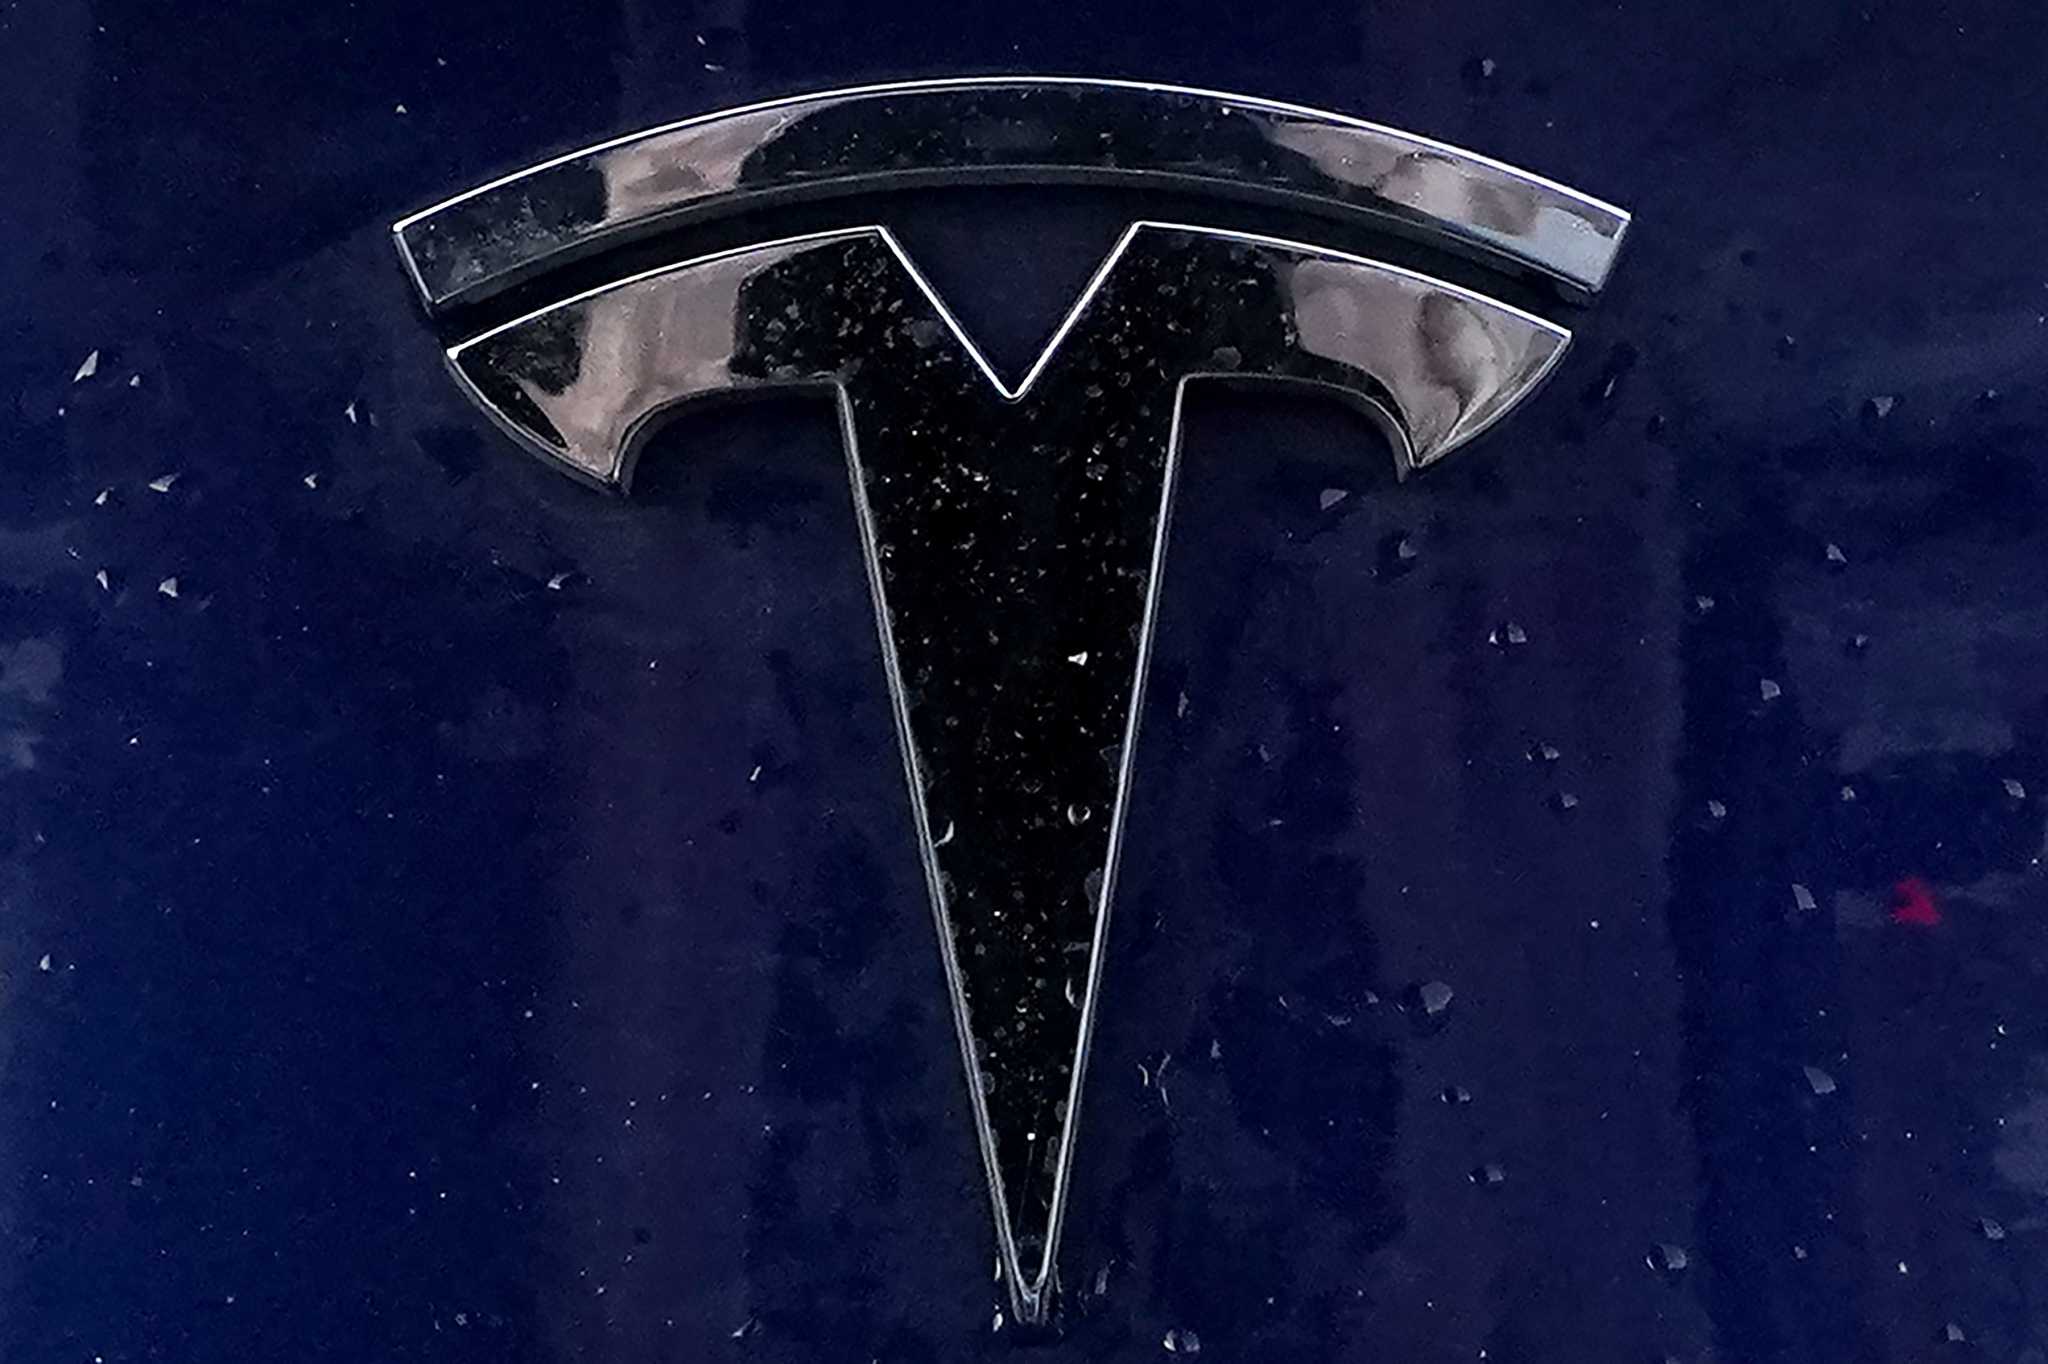 Tesla recalling more than 125,000 vehicles to fix seat belt warning system